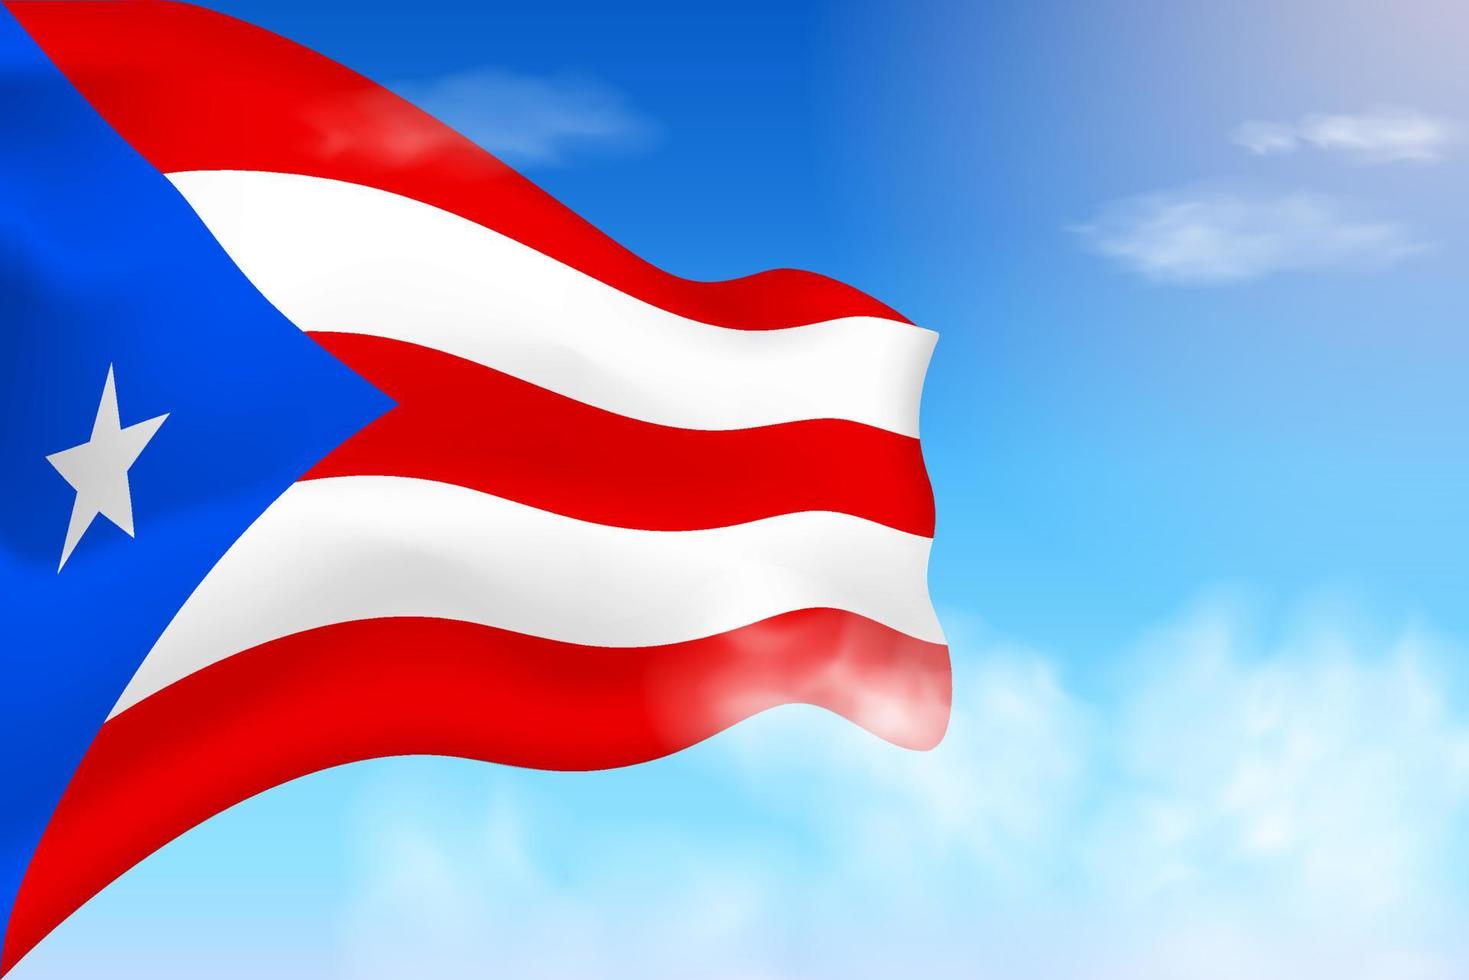 Puerto Rico vlag in de wolken. vector vlag zwaaien in de lucht. nationale dag realistische vlag illustratie. blauwe hemelvector.